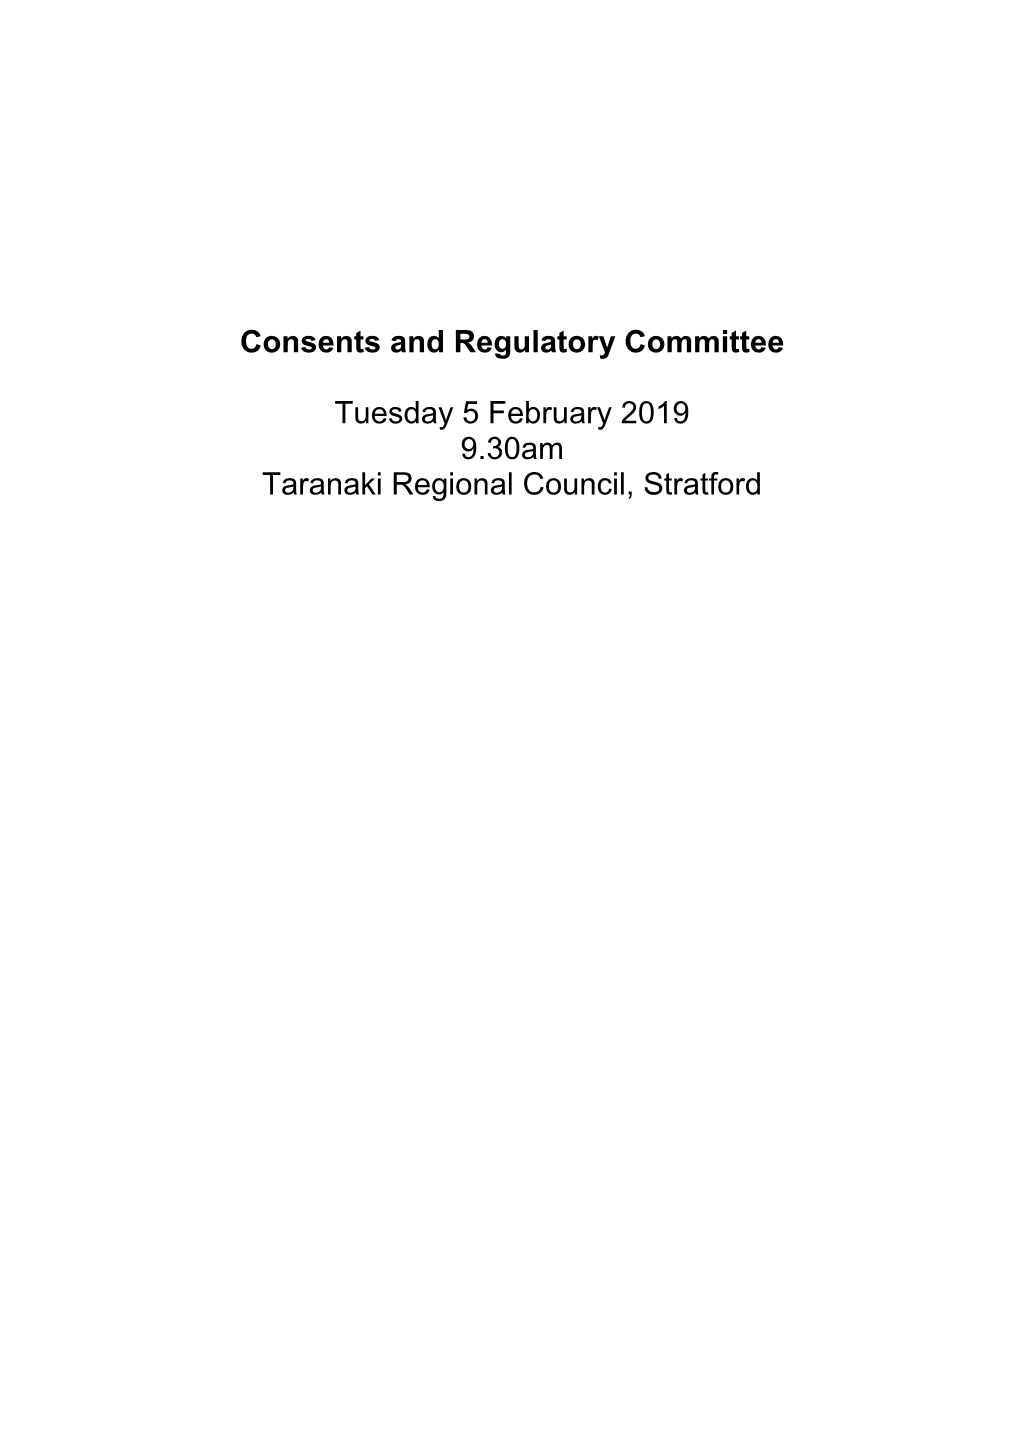 Consents & Regulatory Committee Agenda February 2019